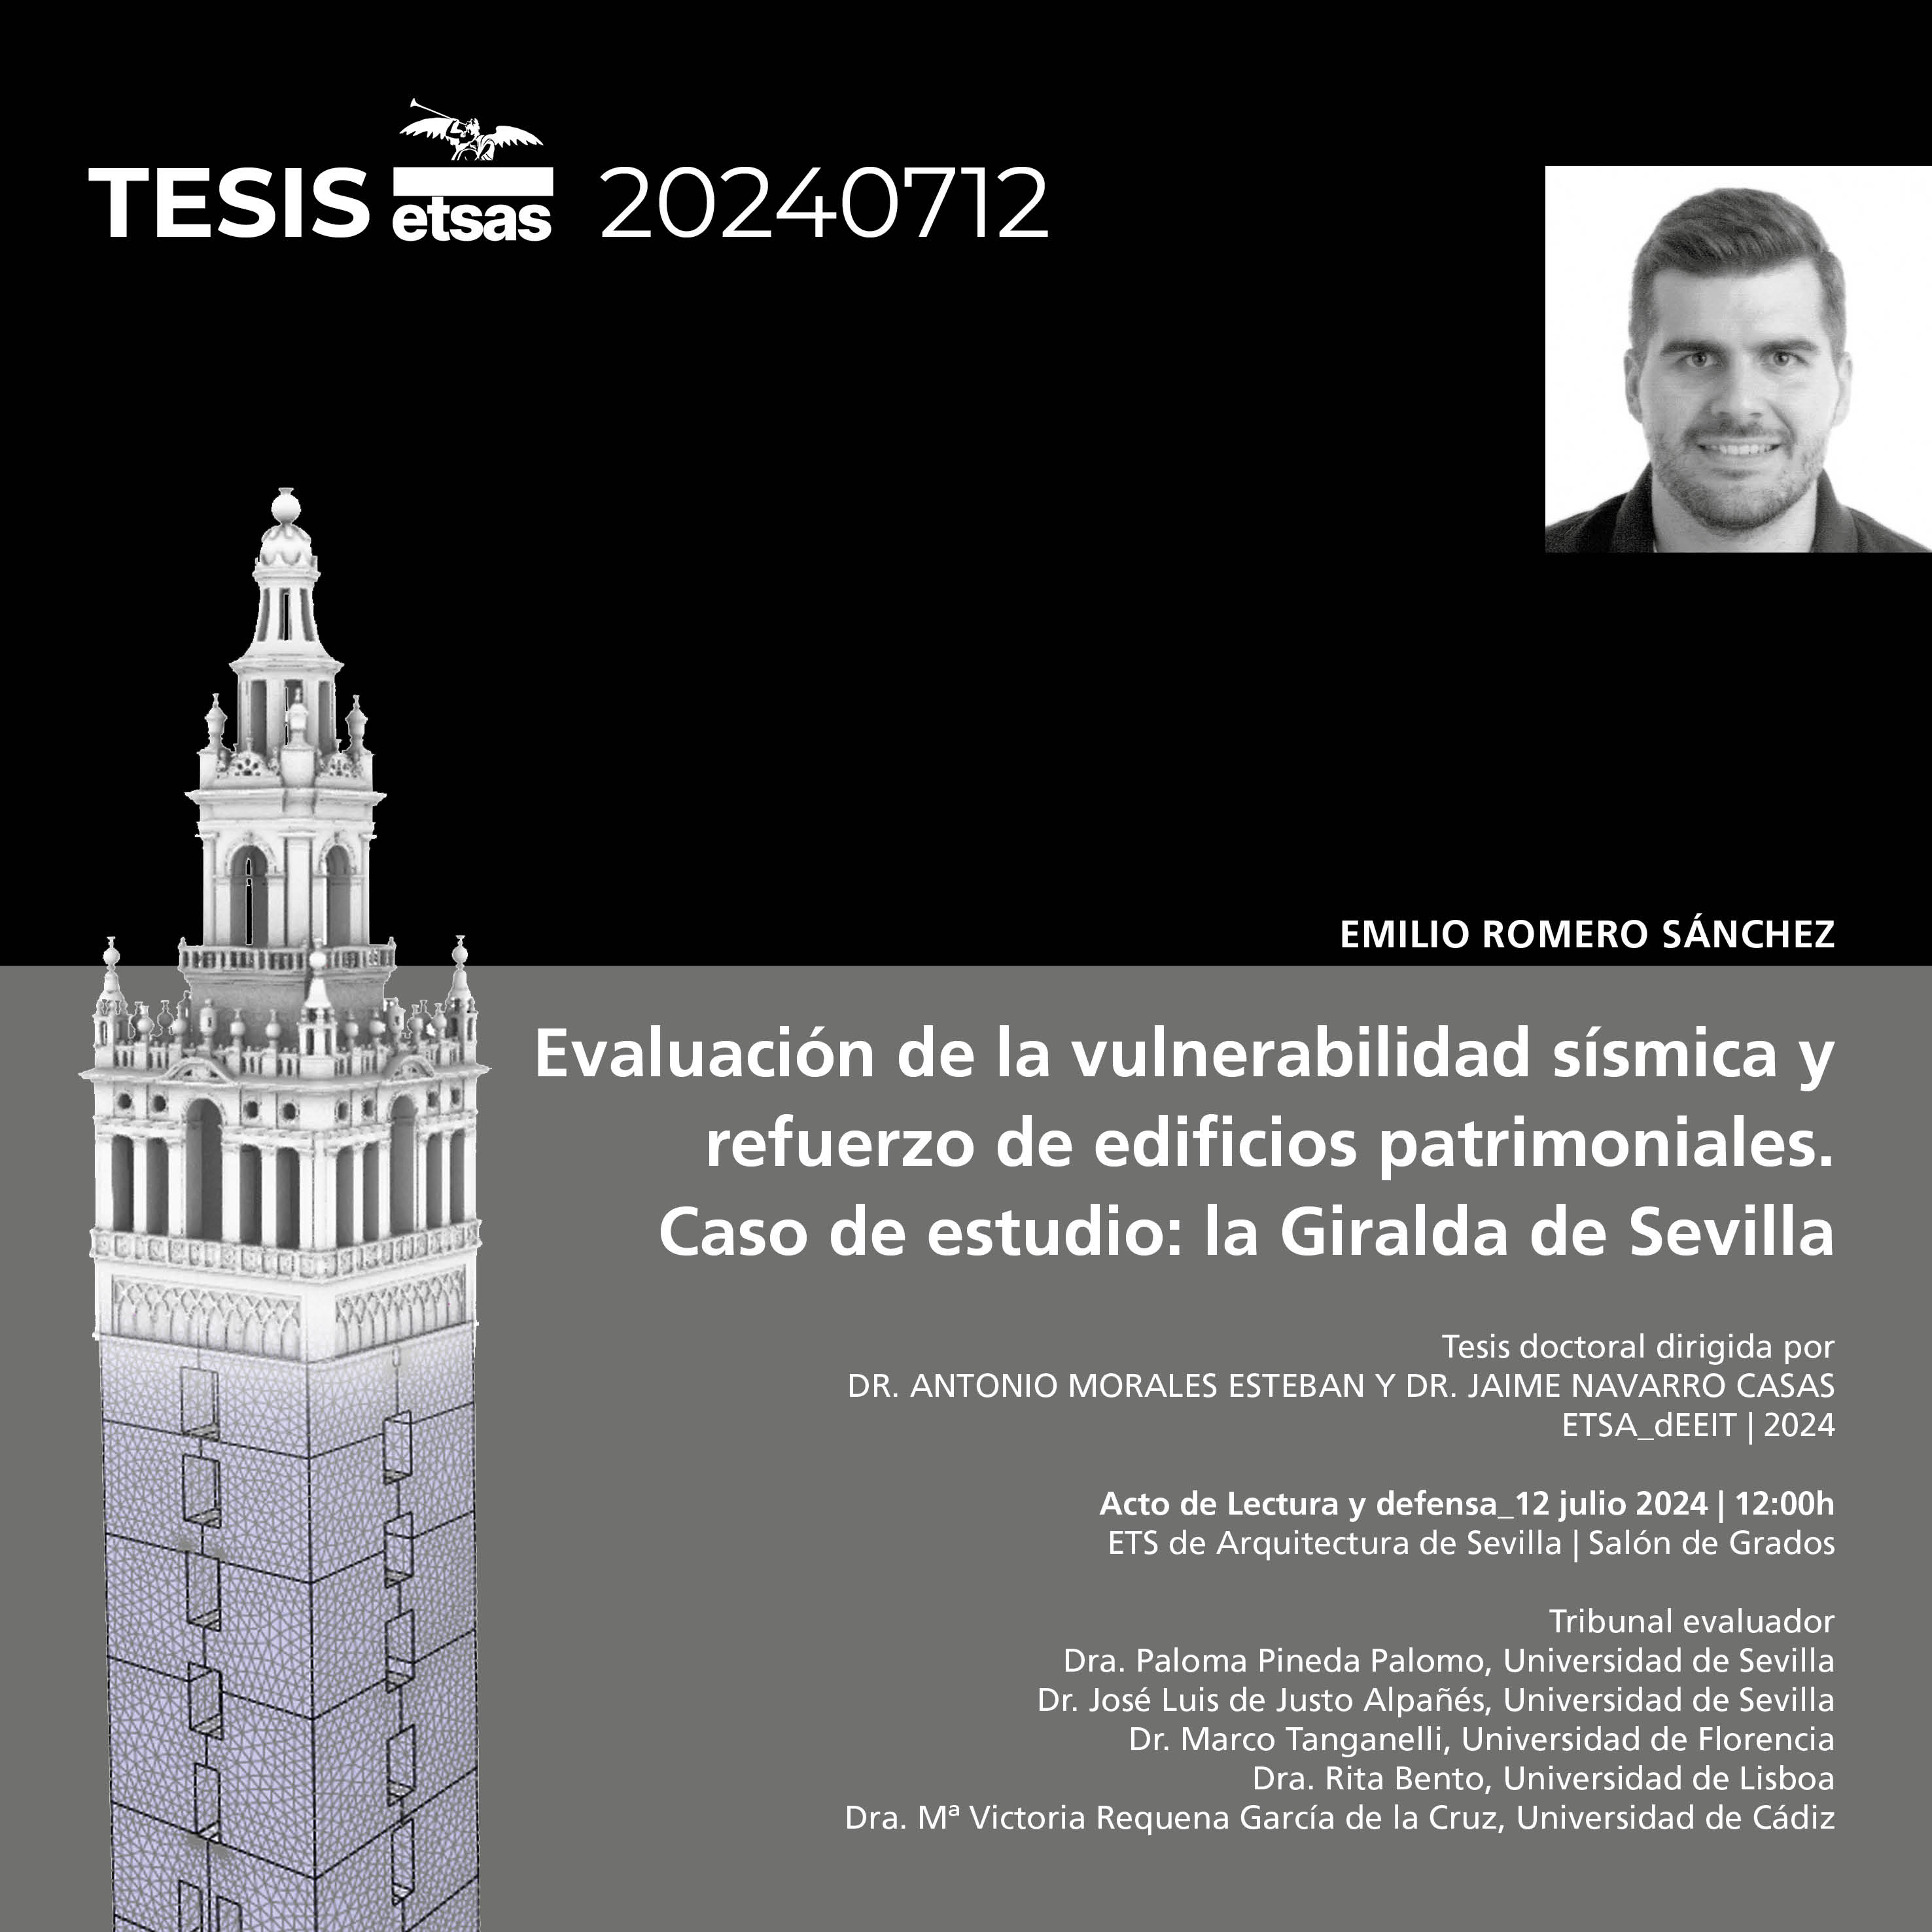 Evaluación de la vulnerabilidad sísmica y refuerzo de edificios patrimoniales. Caso de estudio: la Giralda de Sevilla